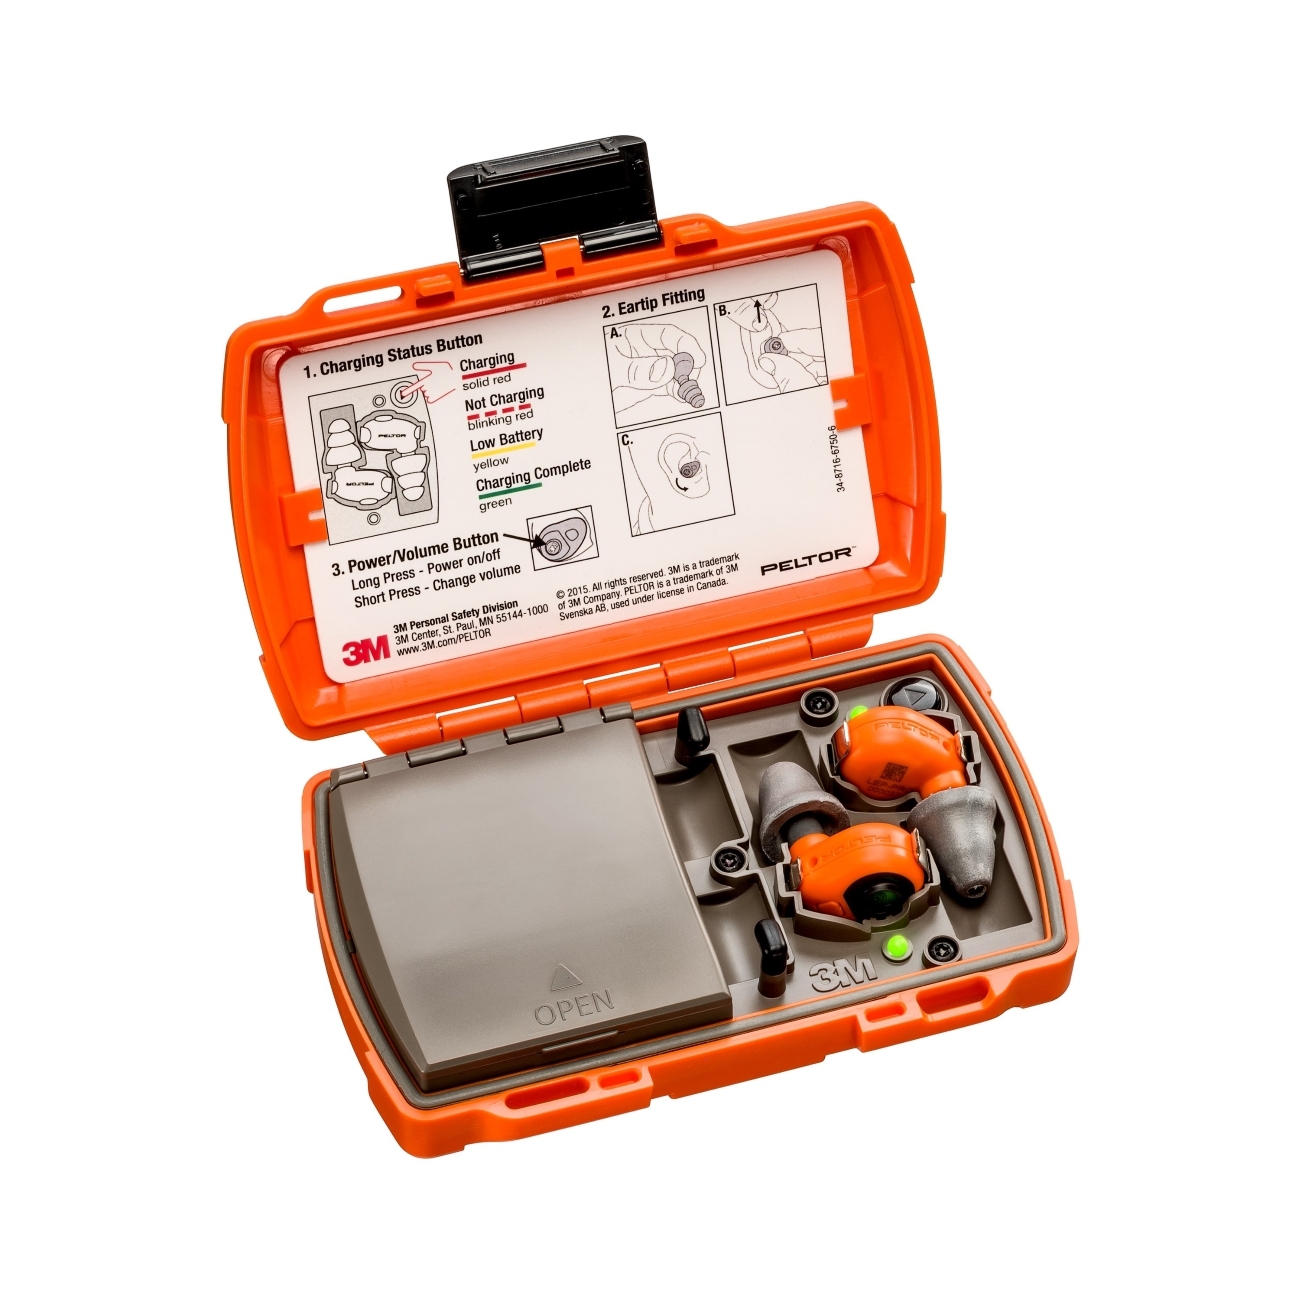 3M Peltor LEP-200 EU orange avec antenne supplémentaire pour la réception sans fil de signaux audio, set : les bouchons et la station de charge (avec couvercle fermé et ports USB) sont classés IP-54 et résistants à l'eau (30 min d'immersion jusqu'à 1